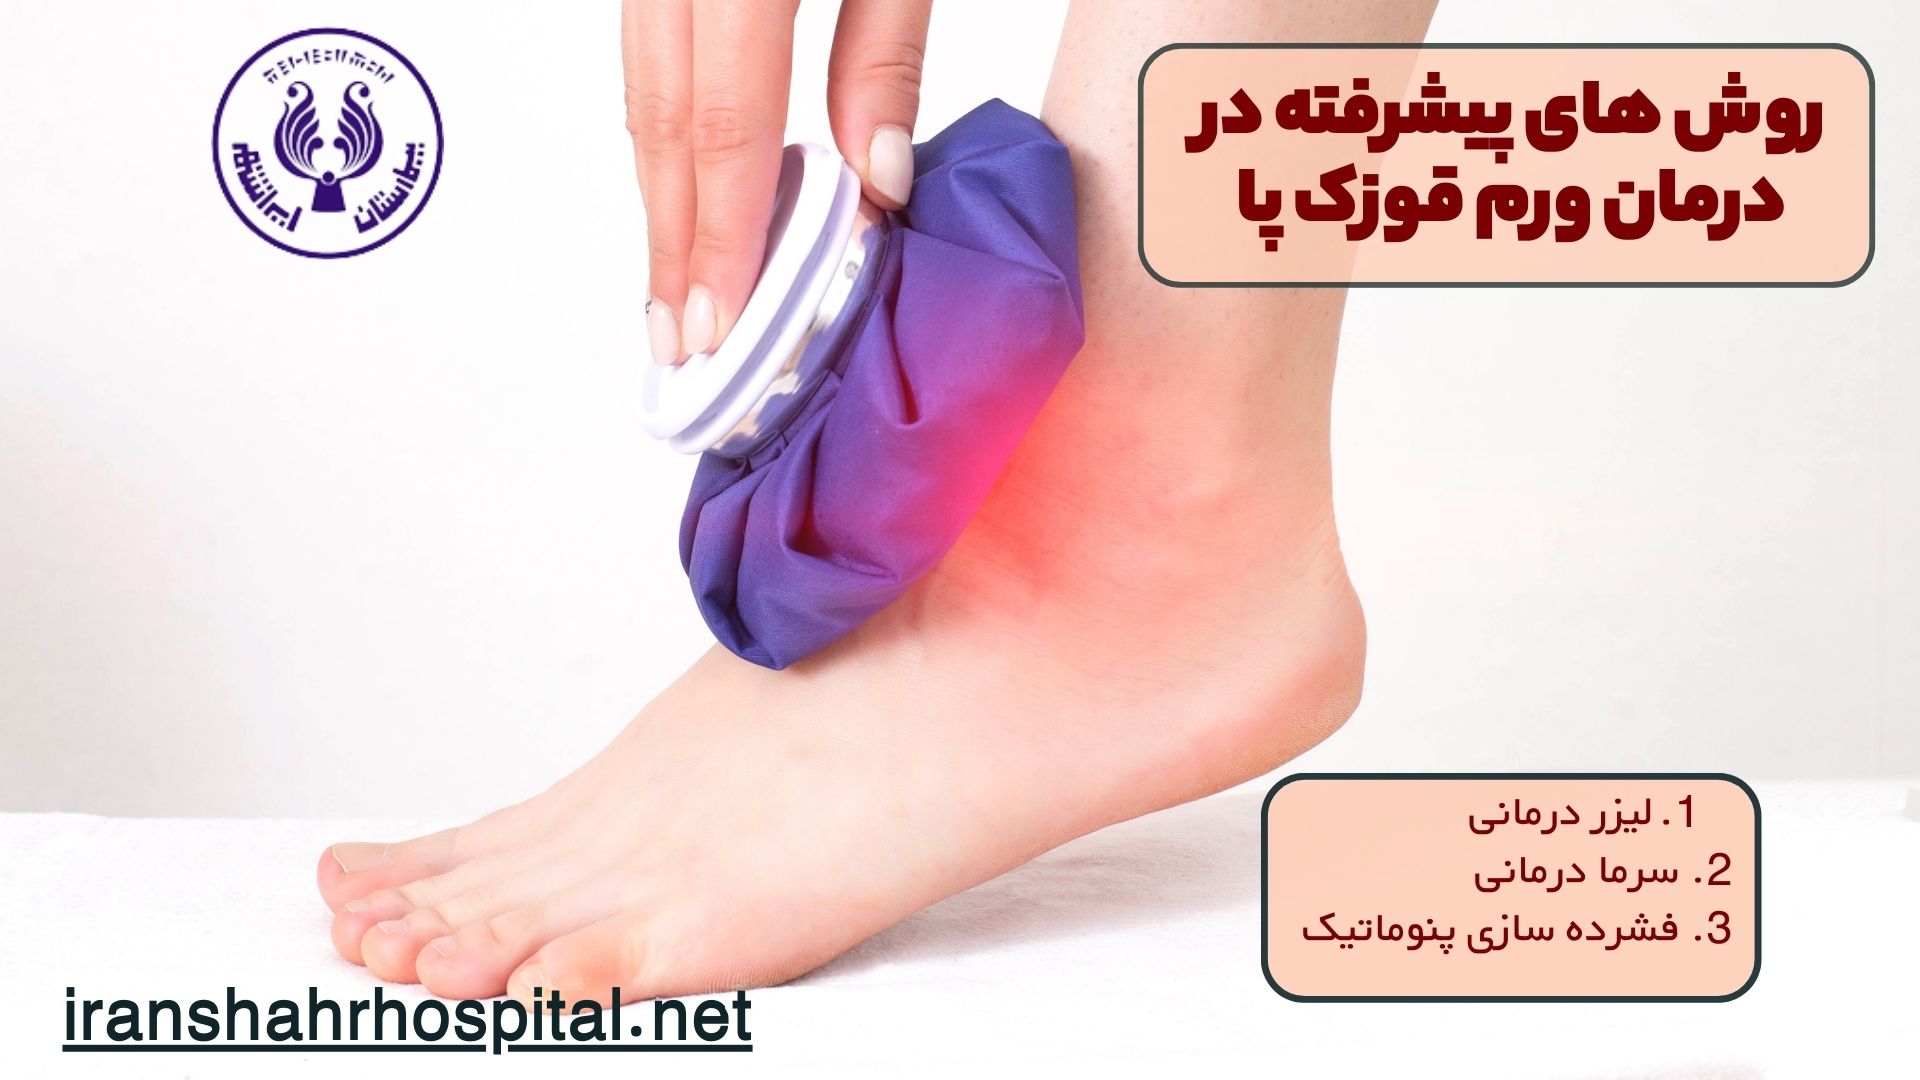 روش های پیشرفته در درمان ورم قوزک پا